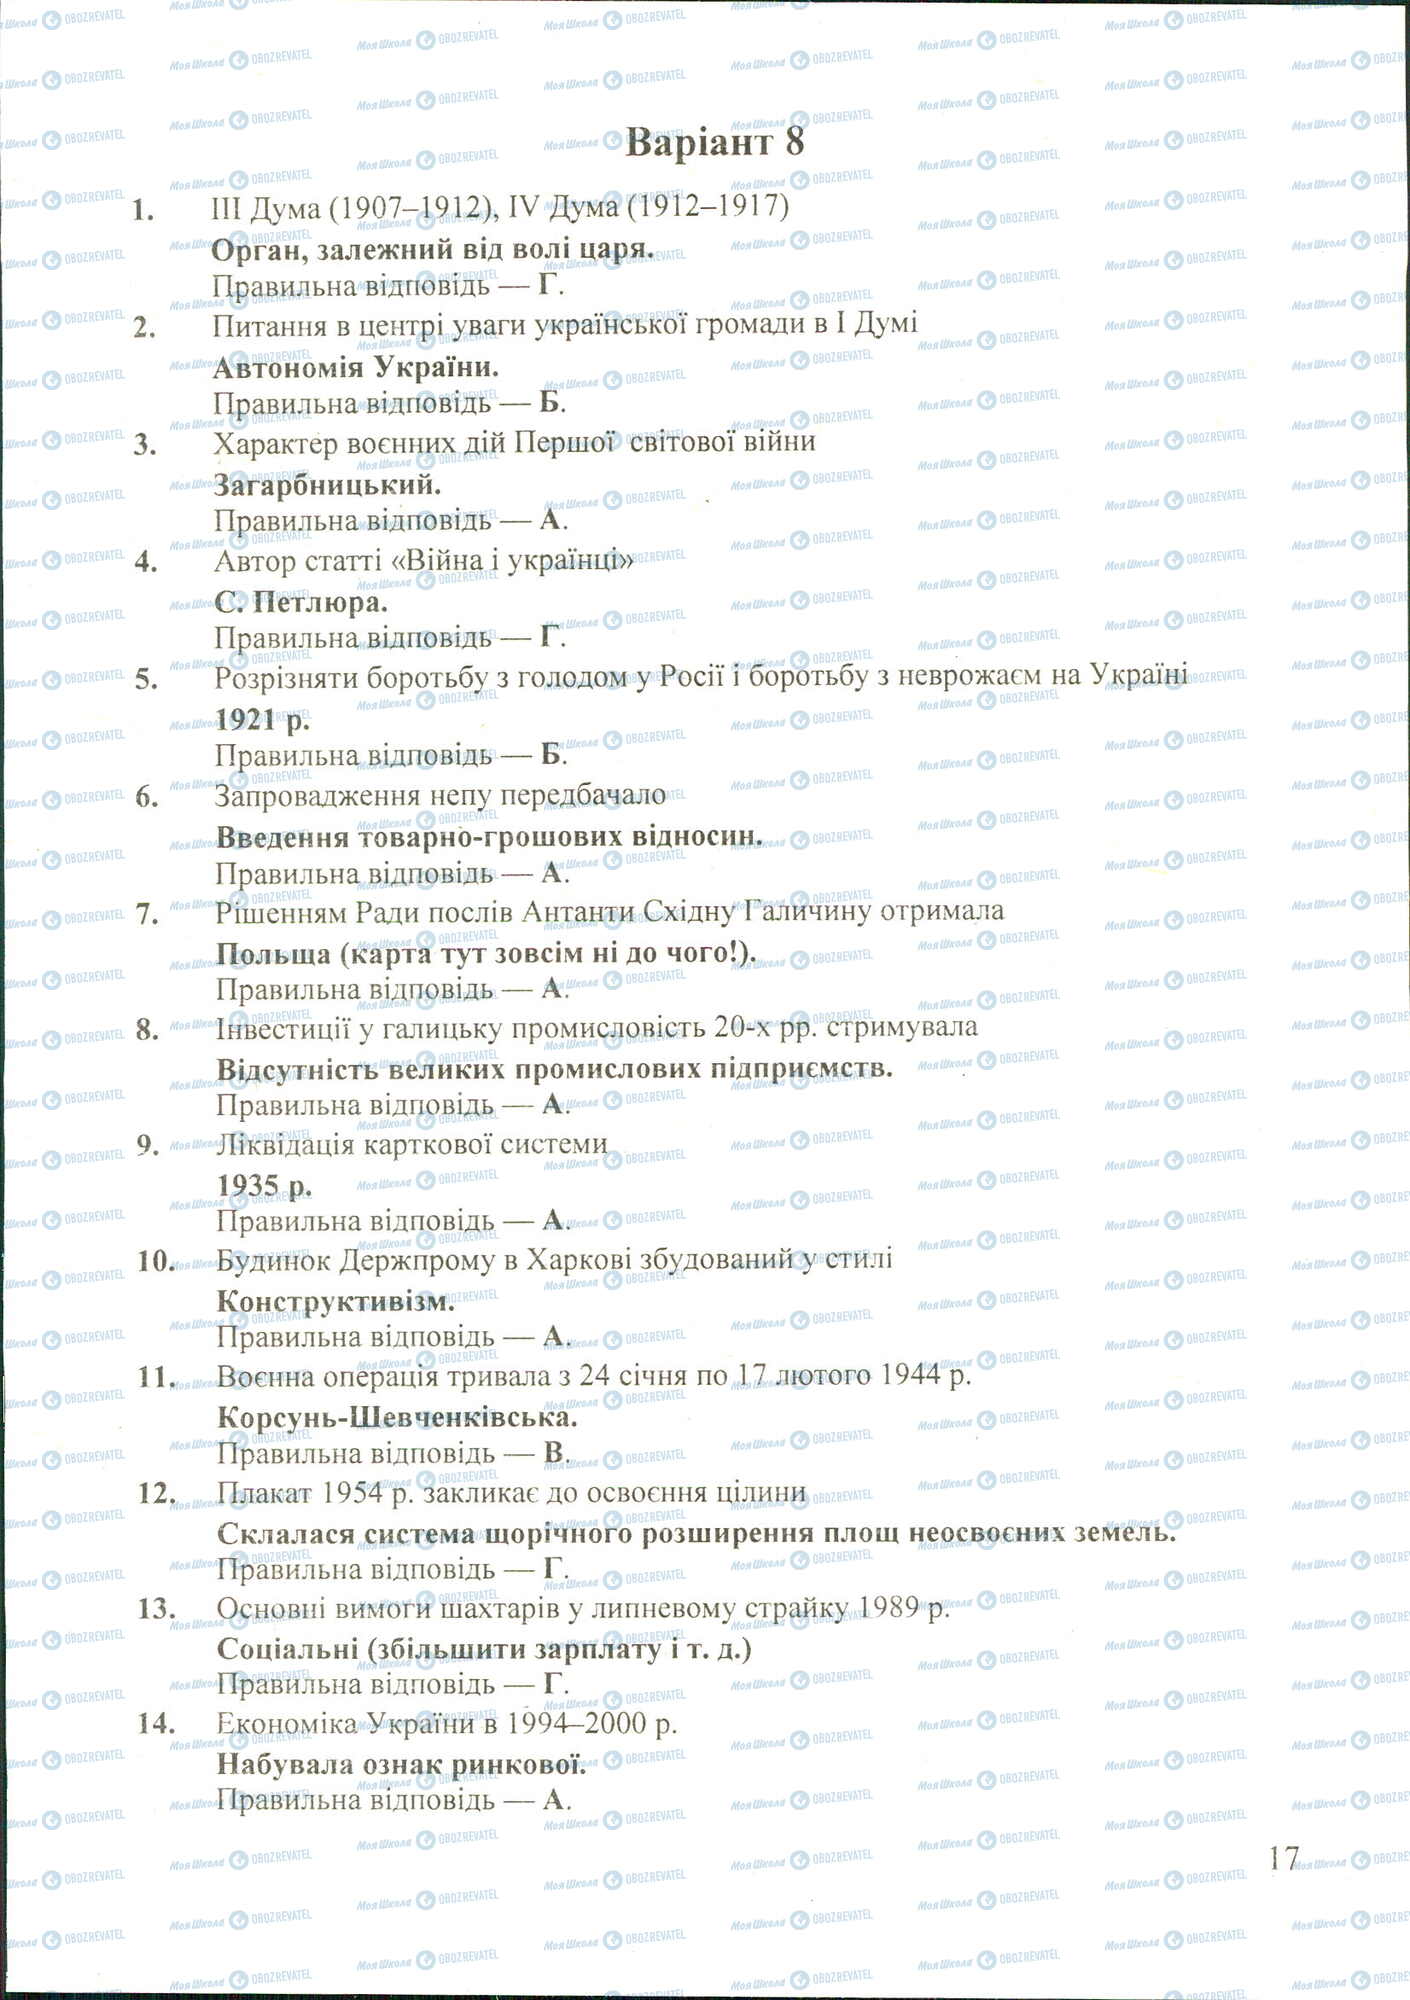 ДПА История Украины 11 класс страница image0000024A